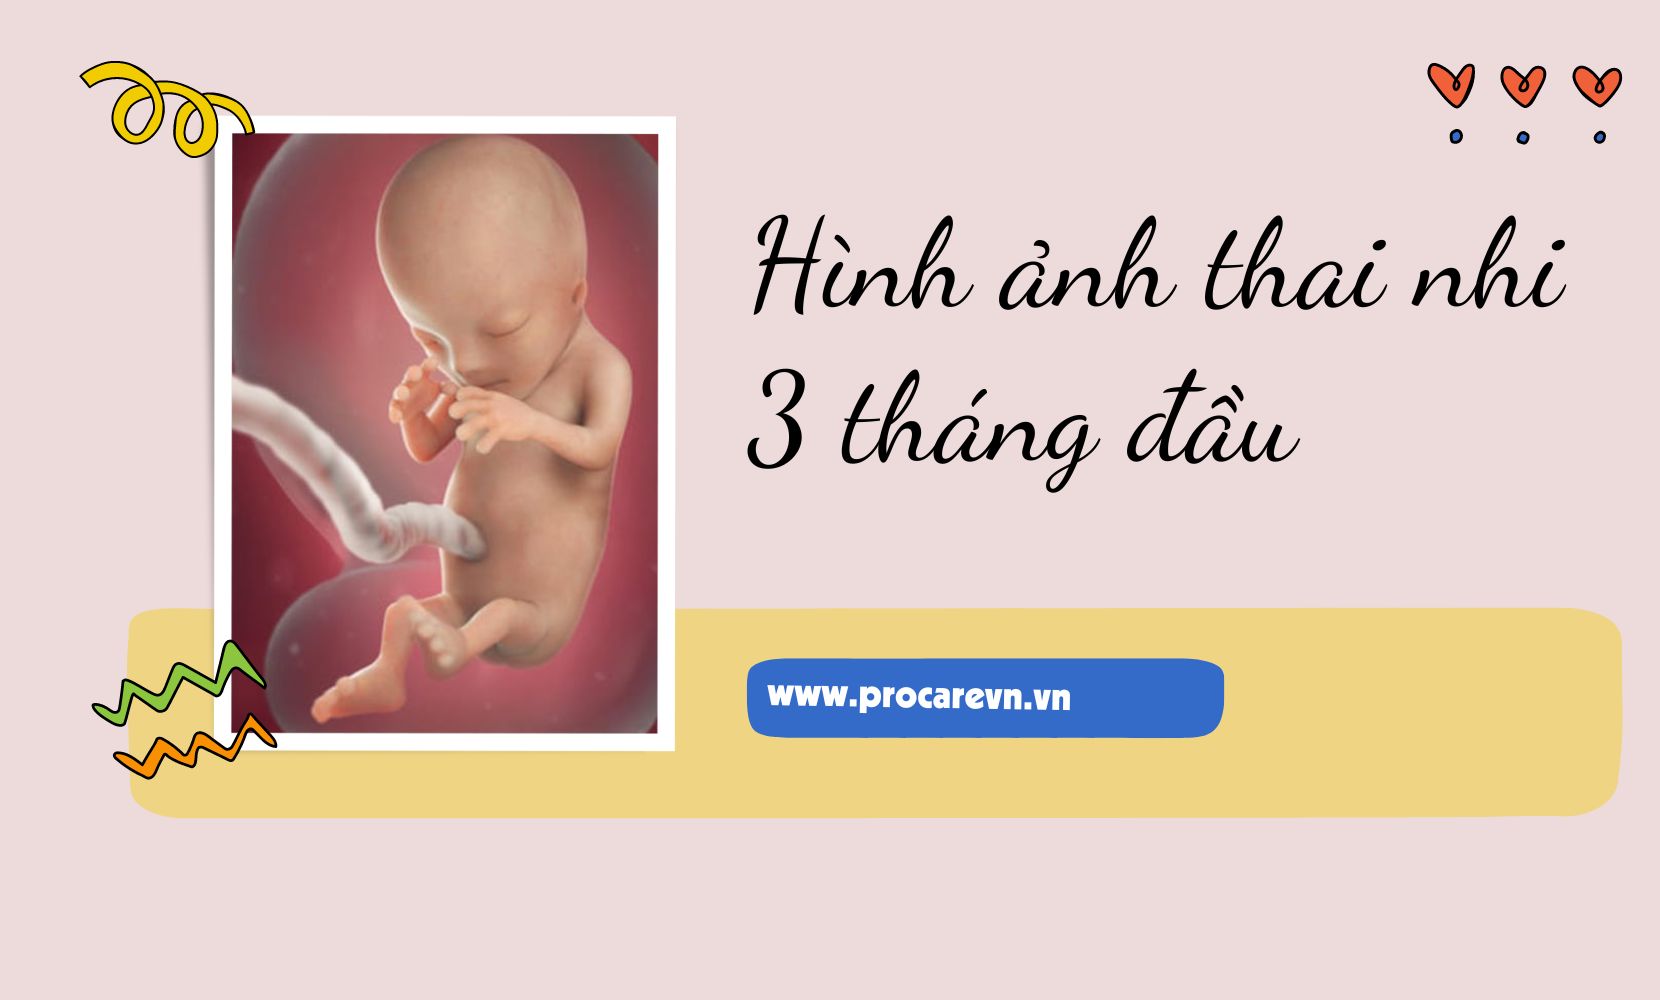 Thai 3 tháng đầu là thời gian quan trọng và đầy cảm xúc trong cuộc đời của một người phụ nữ. Hình ảnh chụp bầu sẽ giúp bạn lưu giữ những kỷ niệm đáng nhớ của giai đoạn này, truyền tải thông điệp yêu thương và hy vọng cho đứa con trong lòng.